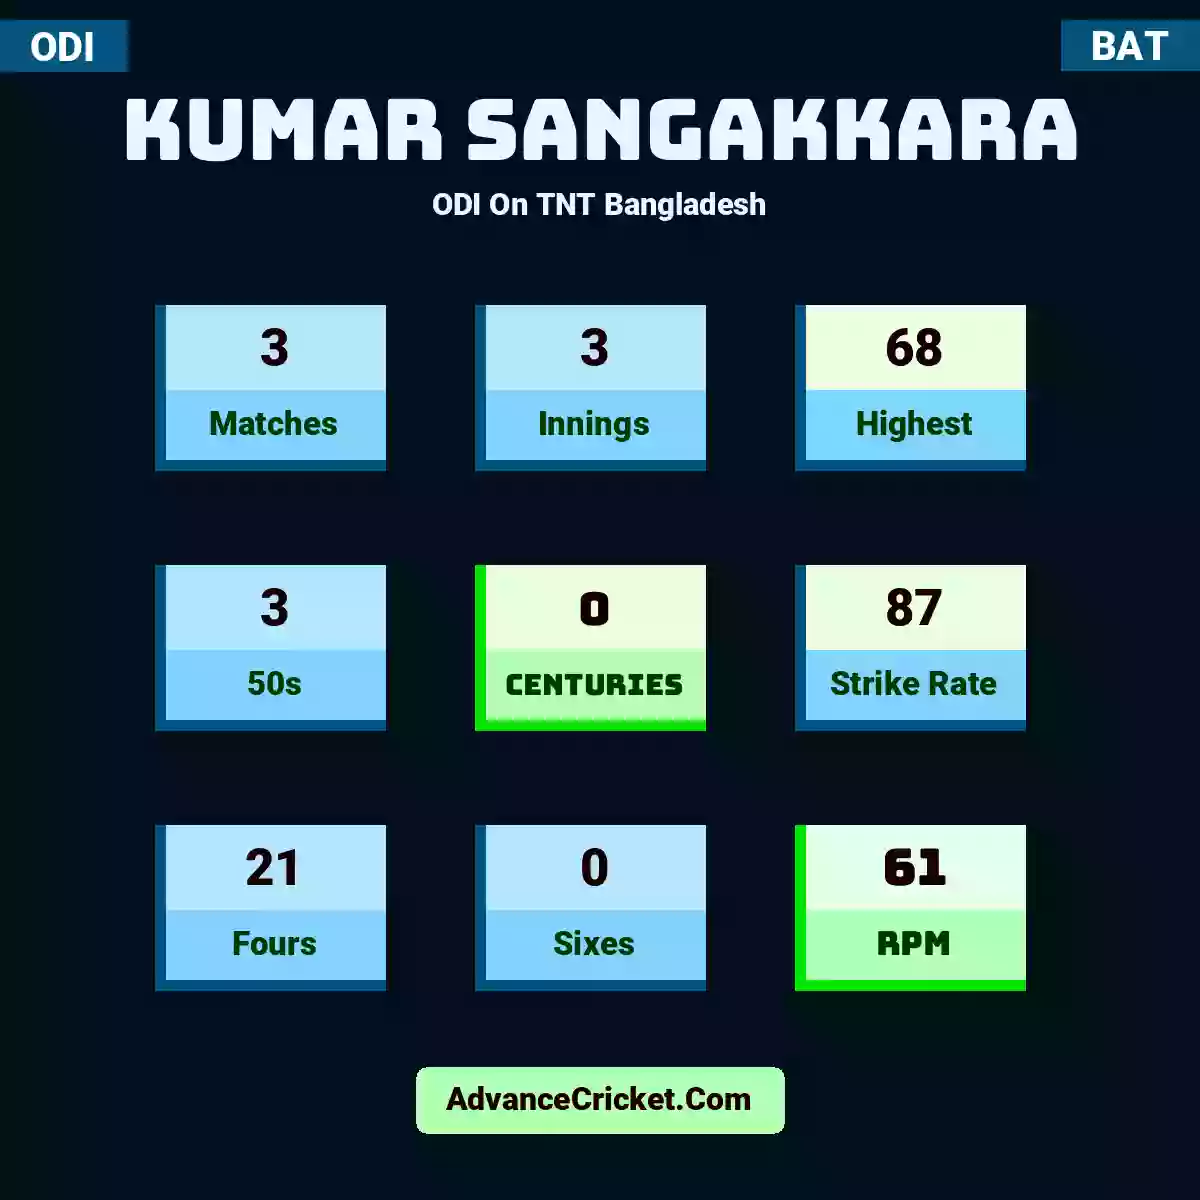 Kumar Sangakkara ODI  On TNT Bangladesh, Kumar Sangakkara played 3 matches, scored 68 runs as highest, 3 half-centuries, and 0 centuries, with a strike rate of 87. K.Sangakkara hit 21 fours and 0 sixes, with an RPM of 61.